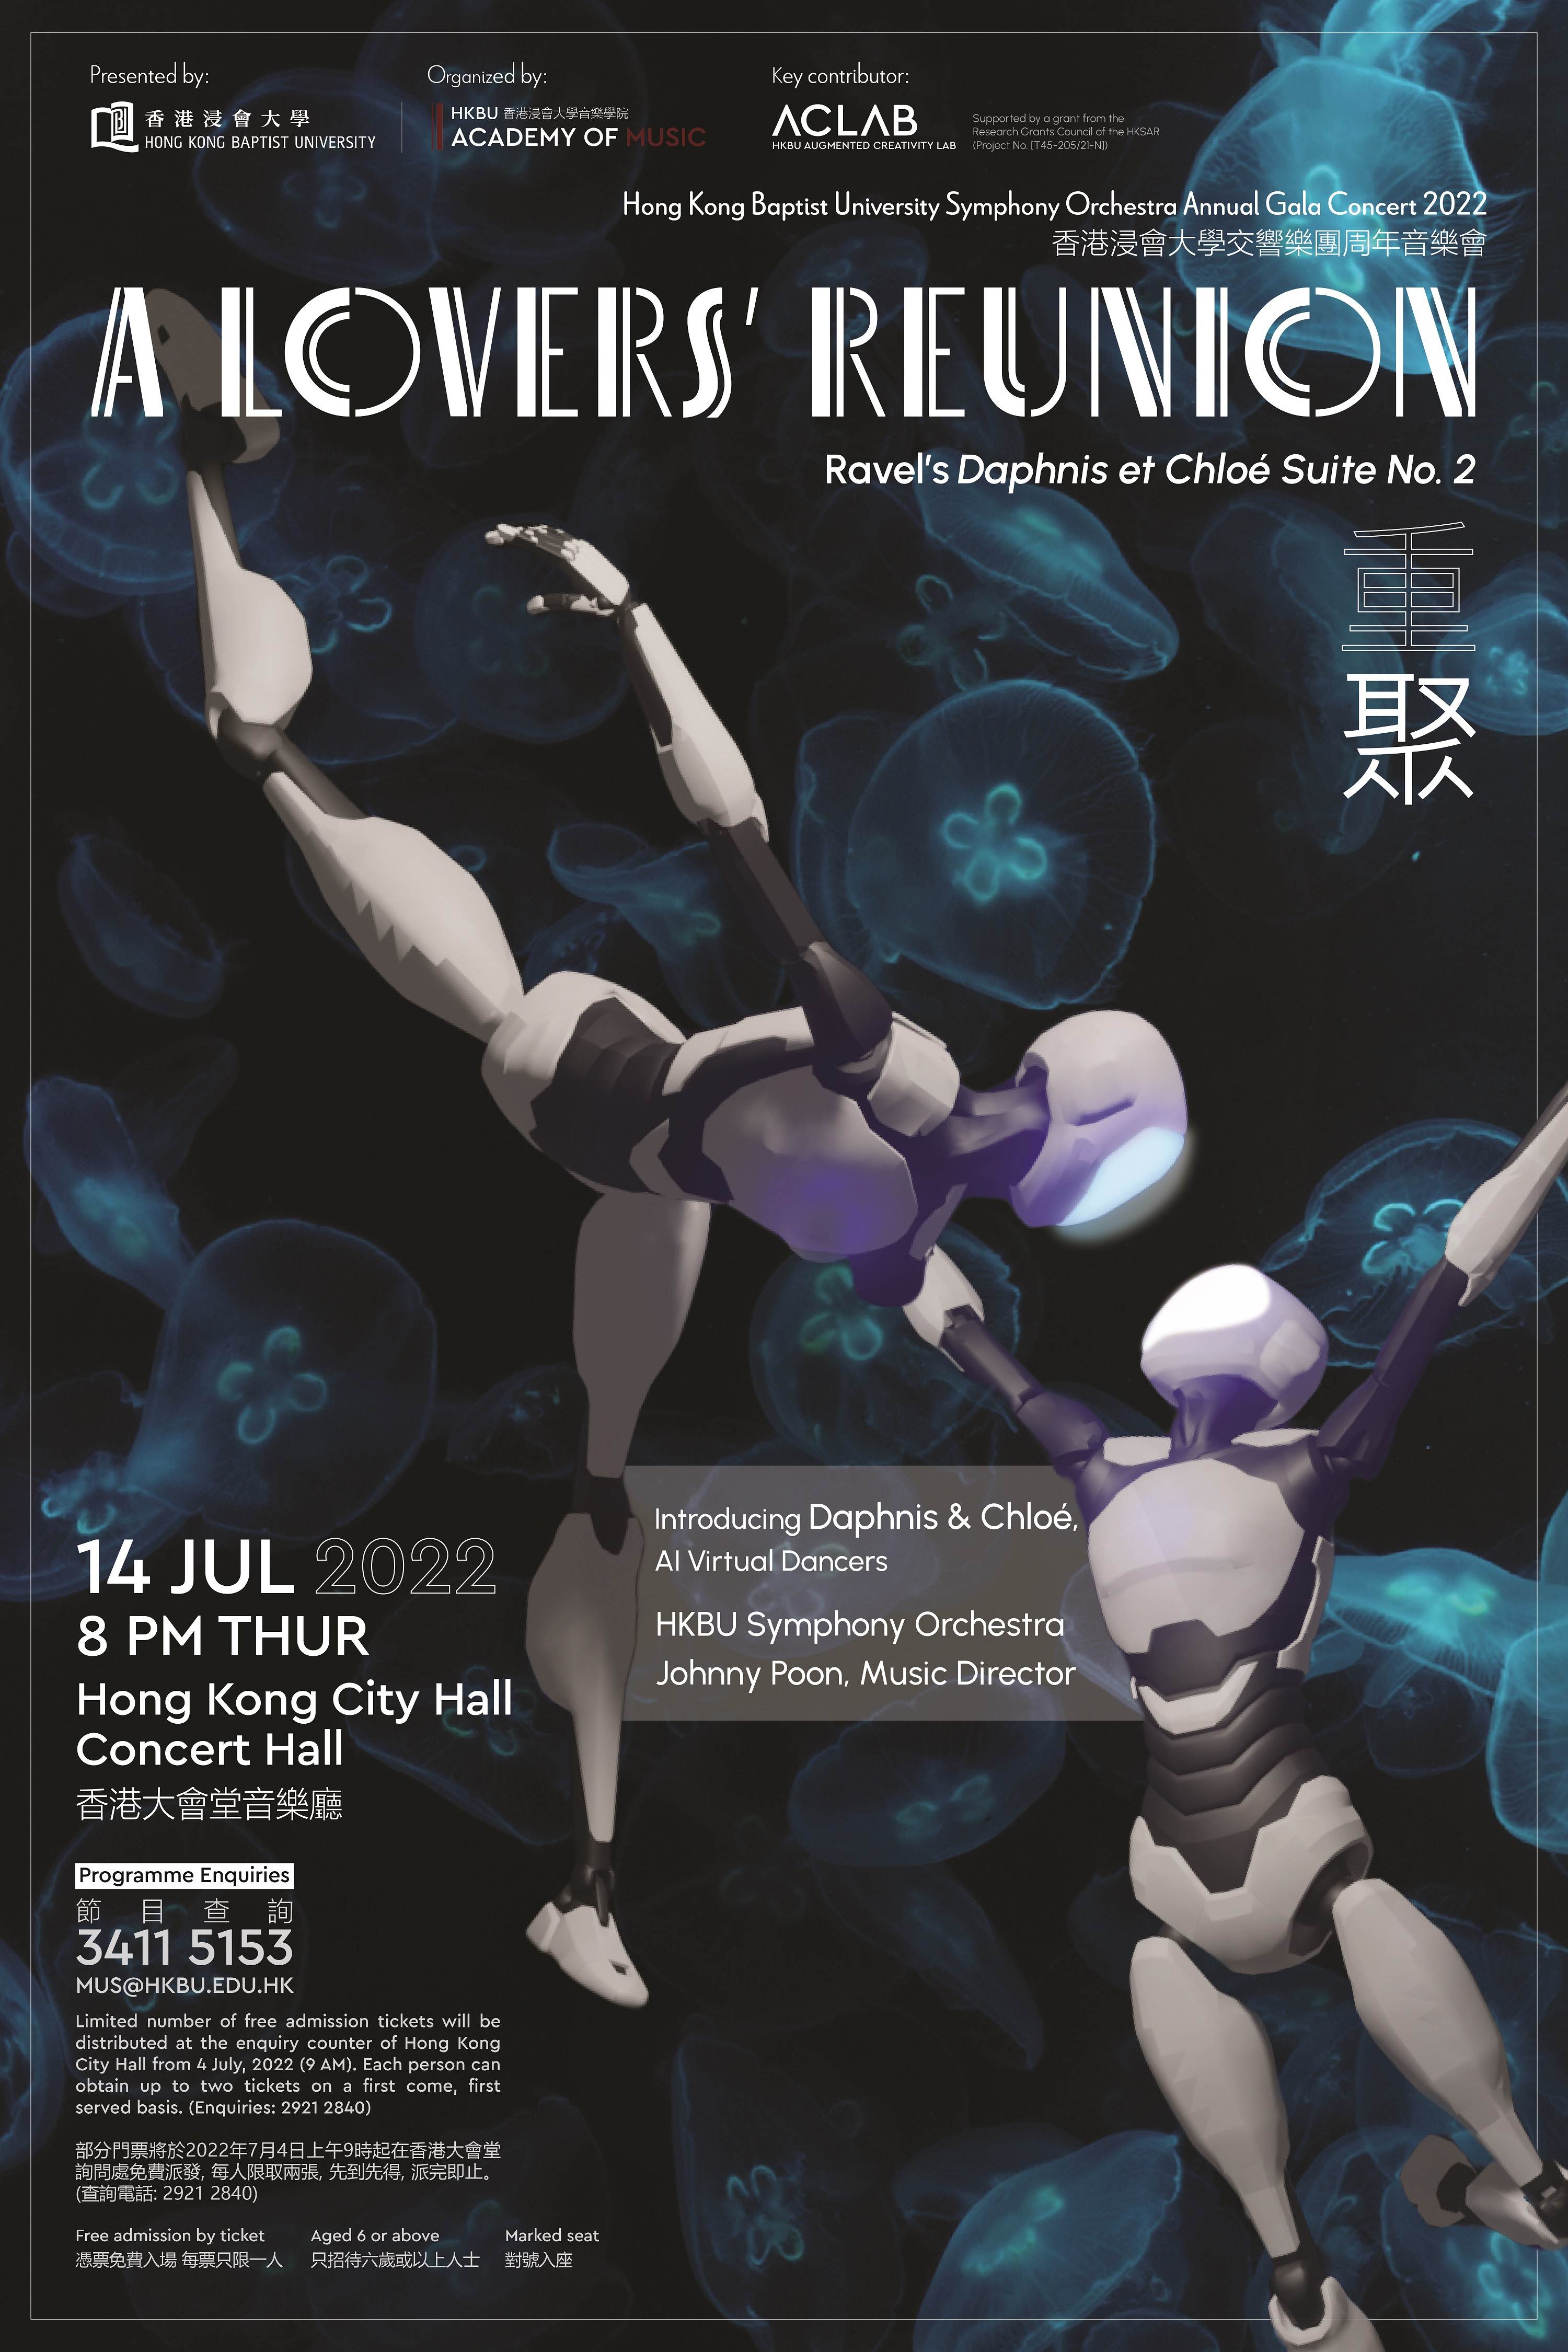 Poster for the HKBU Symphony Orchestra